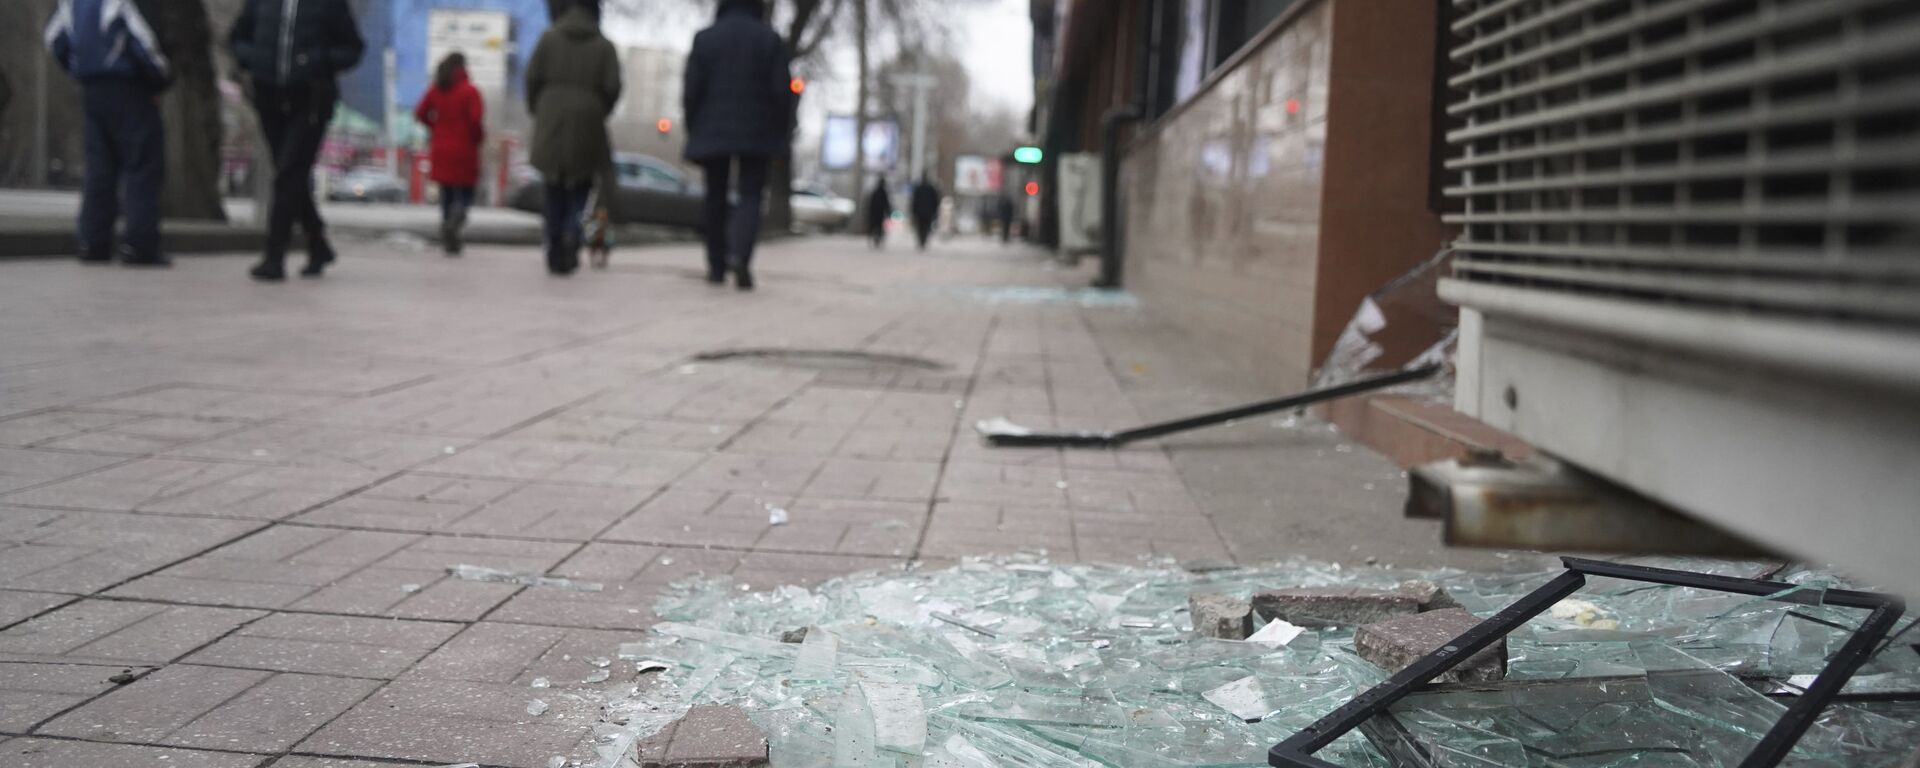 أشخاص يمشون أمام متجر به نوافذ مكسورة أثناء الاشتباكات في ألماتي، كازاخستان، 10 يناير 2022. - سبوتنيك عربي, 1920, 10.01.2022